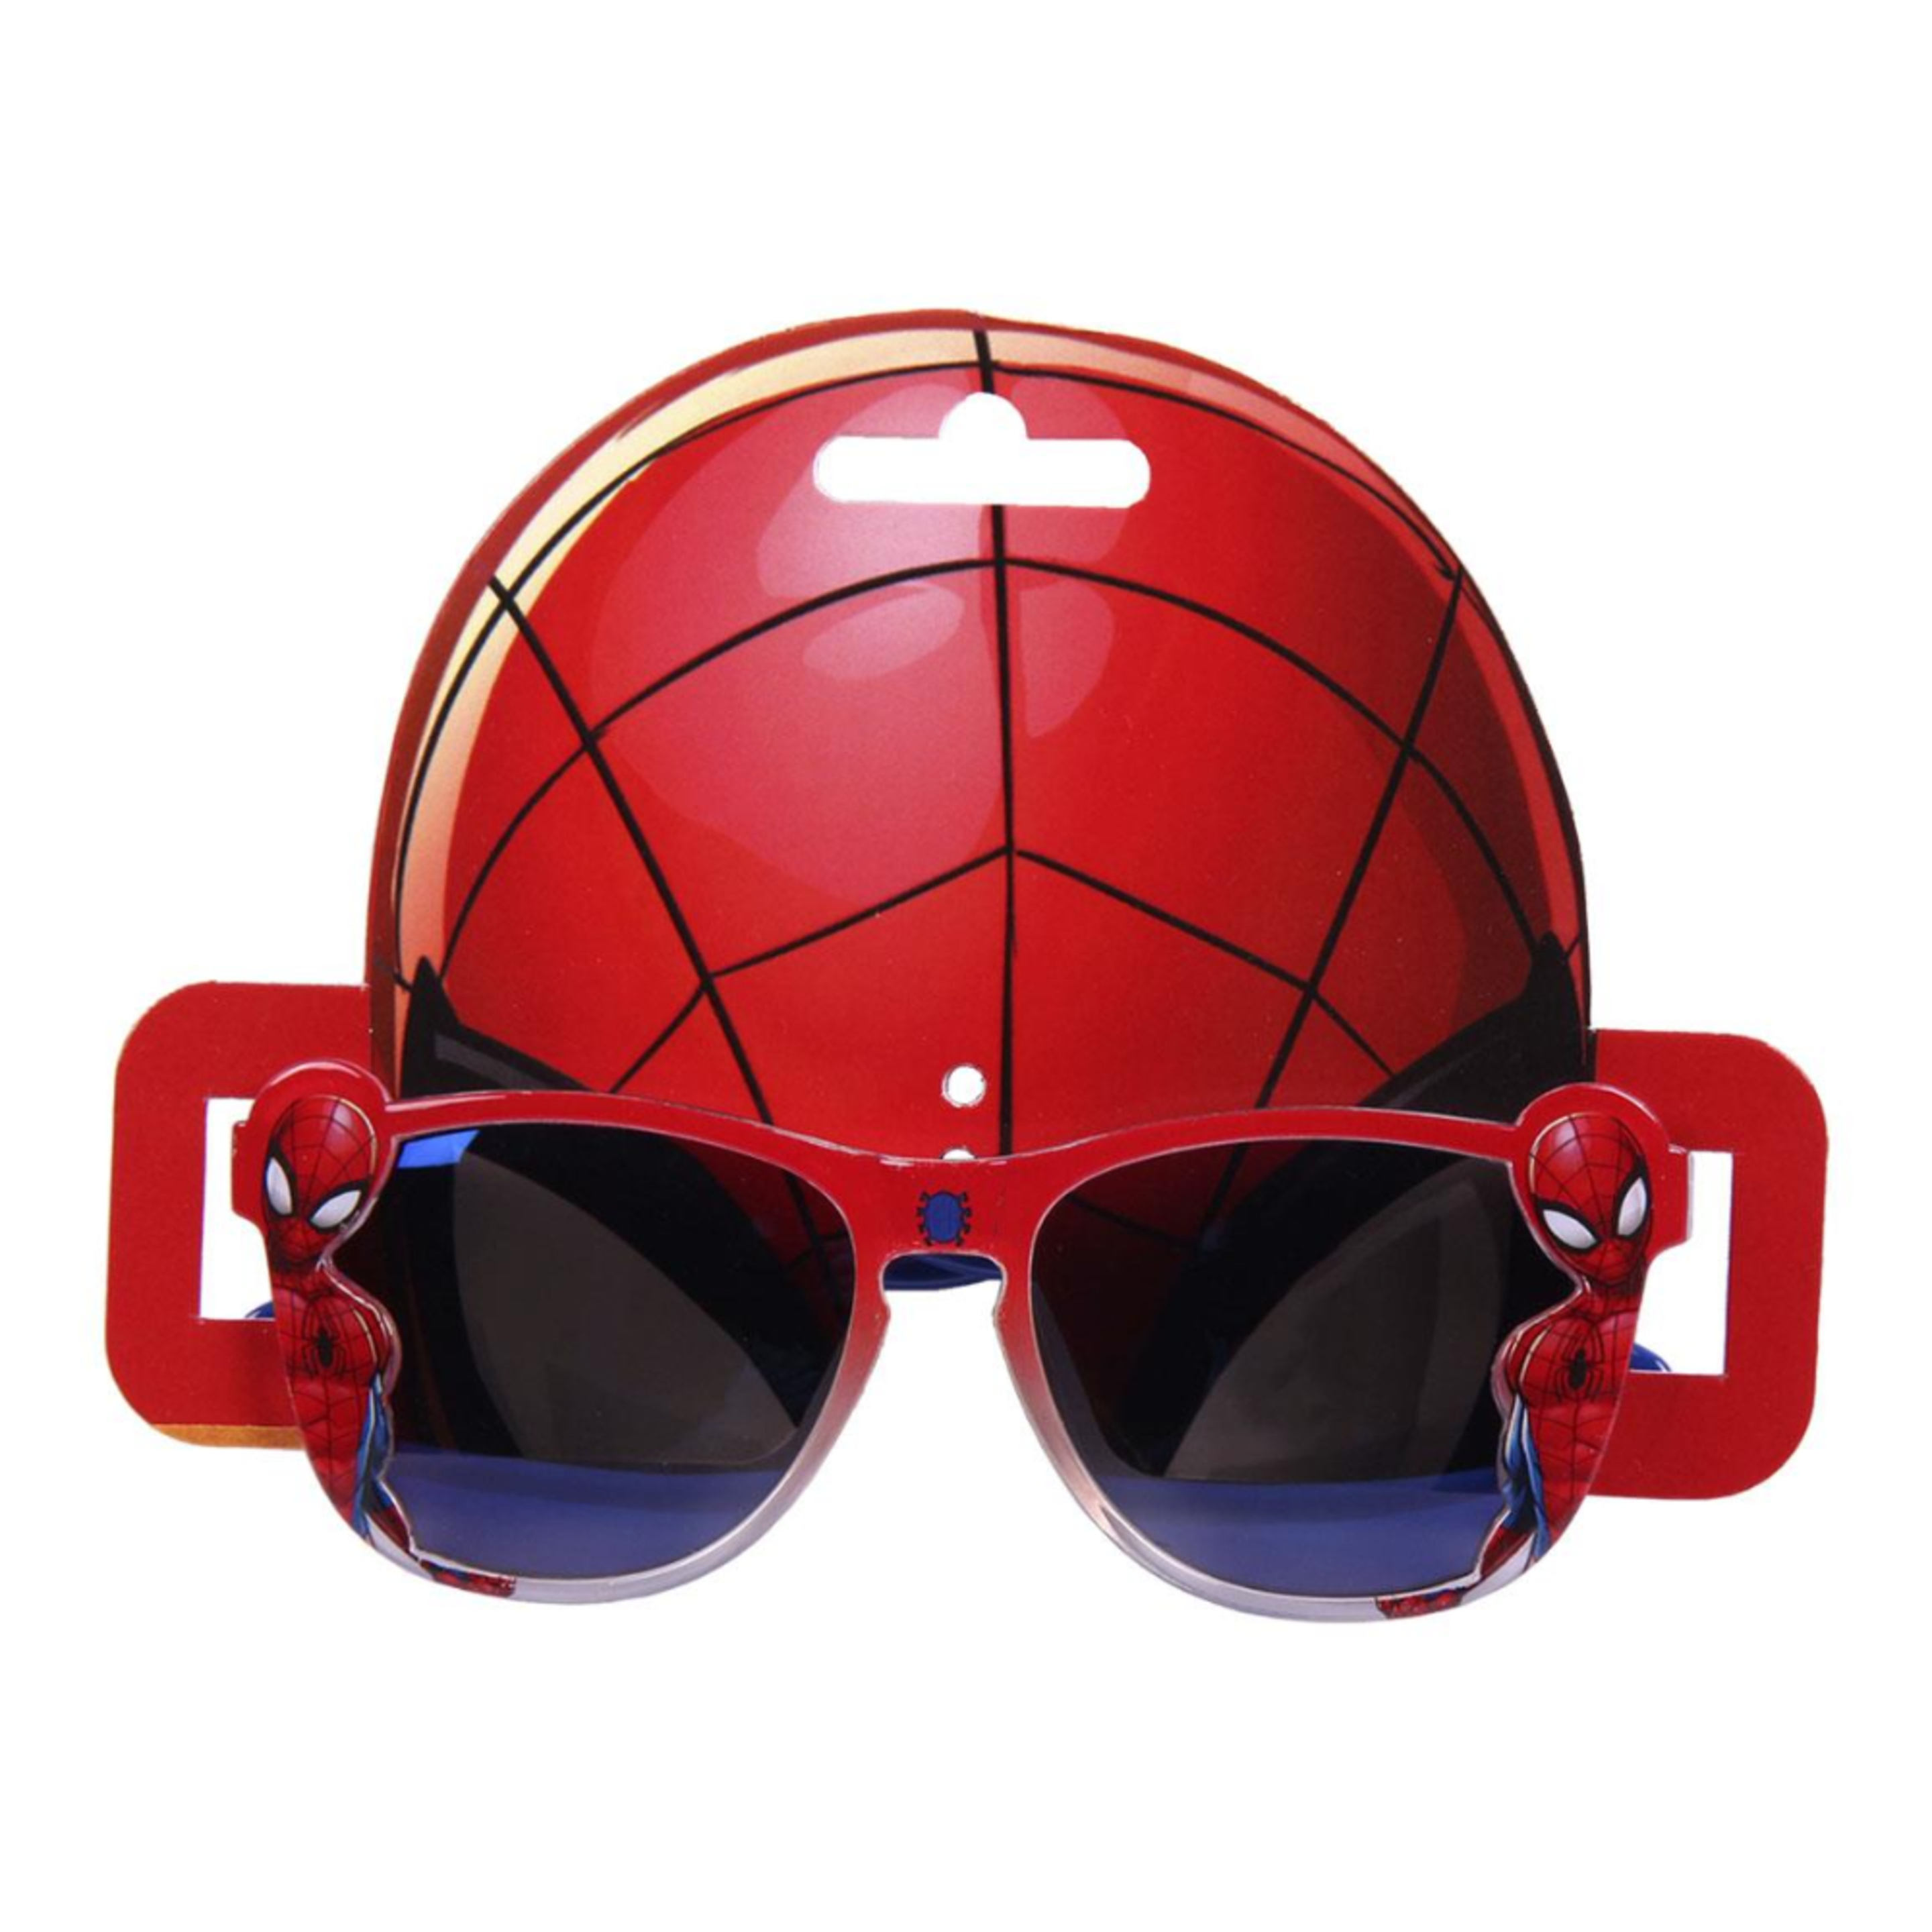 Gafas De Sol Spiderman